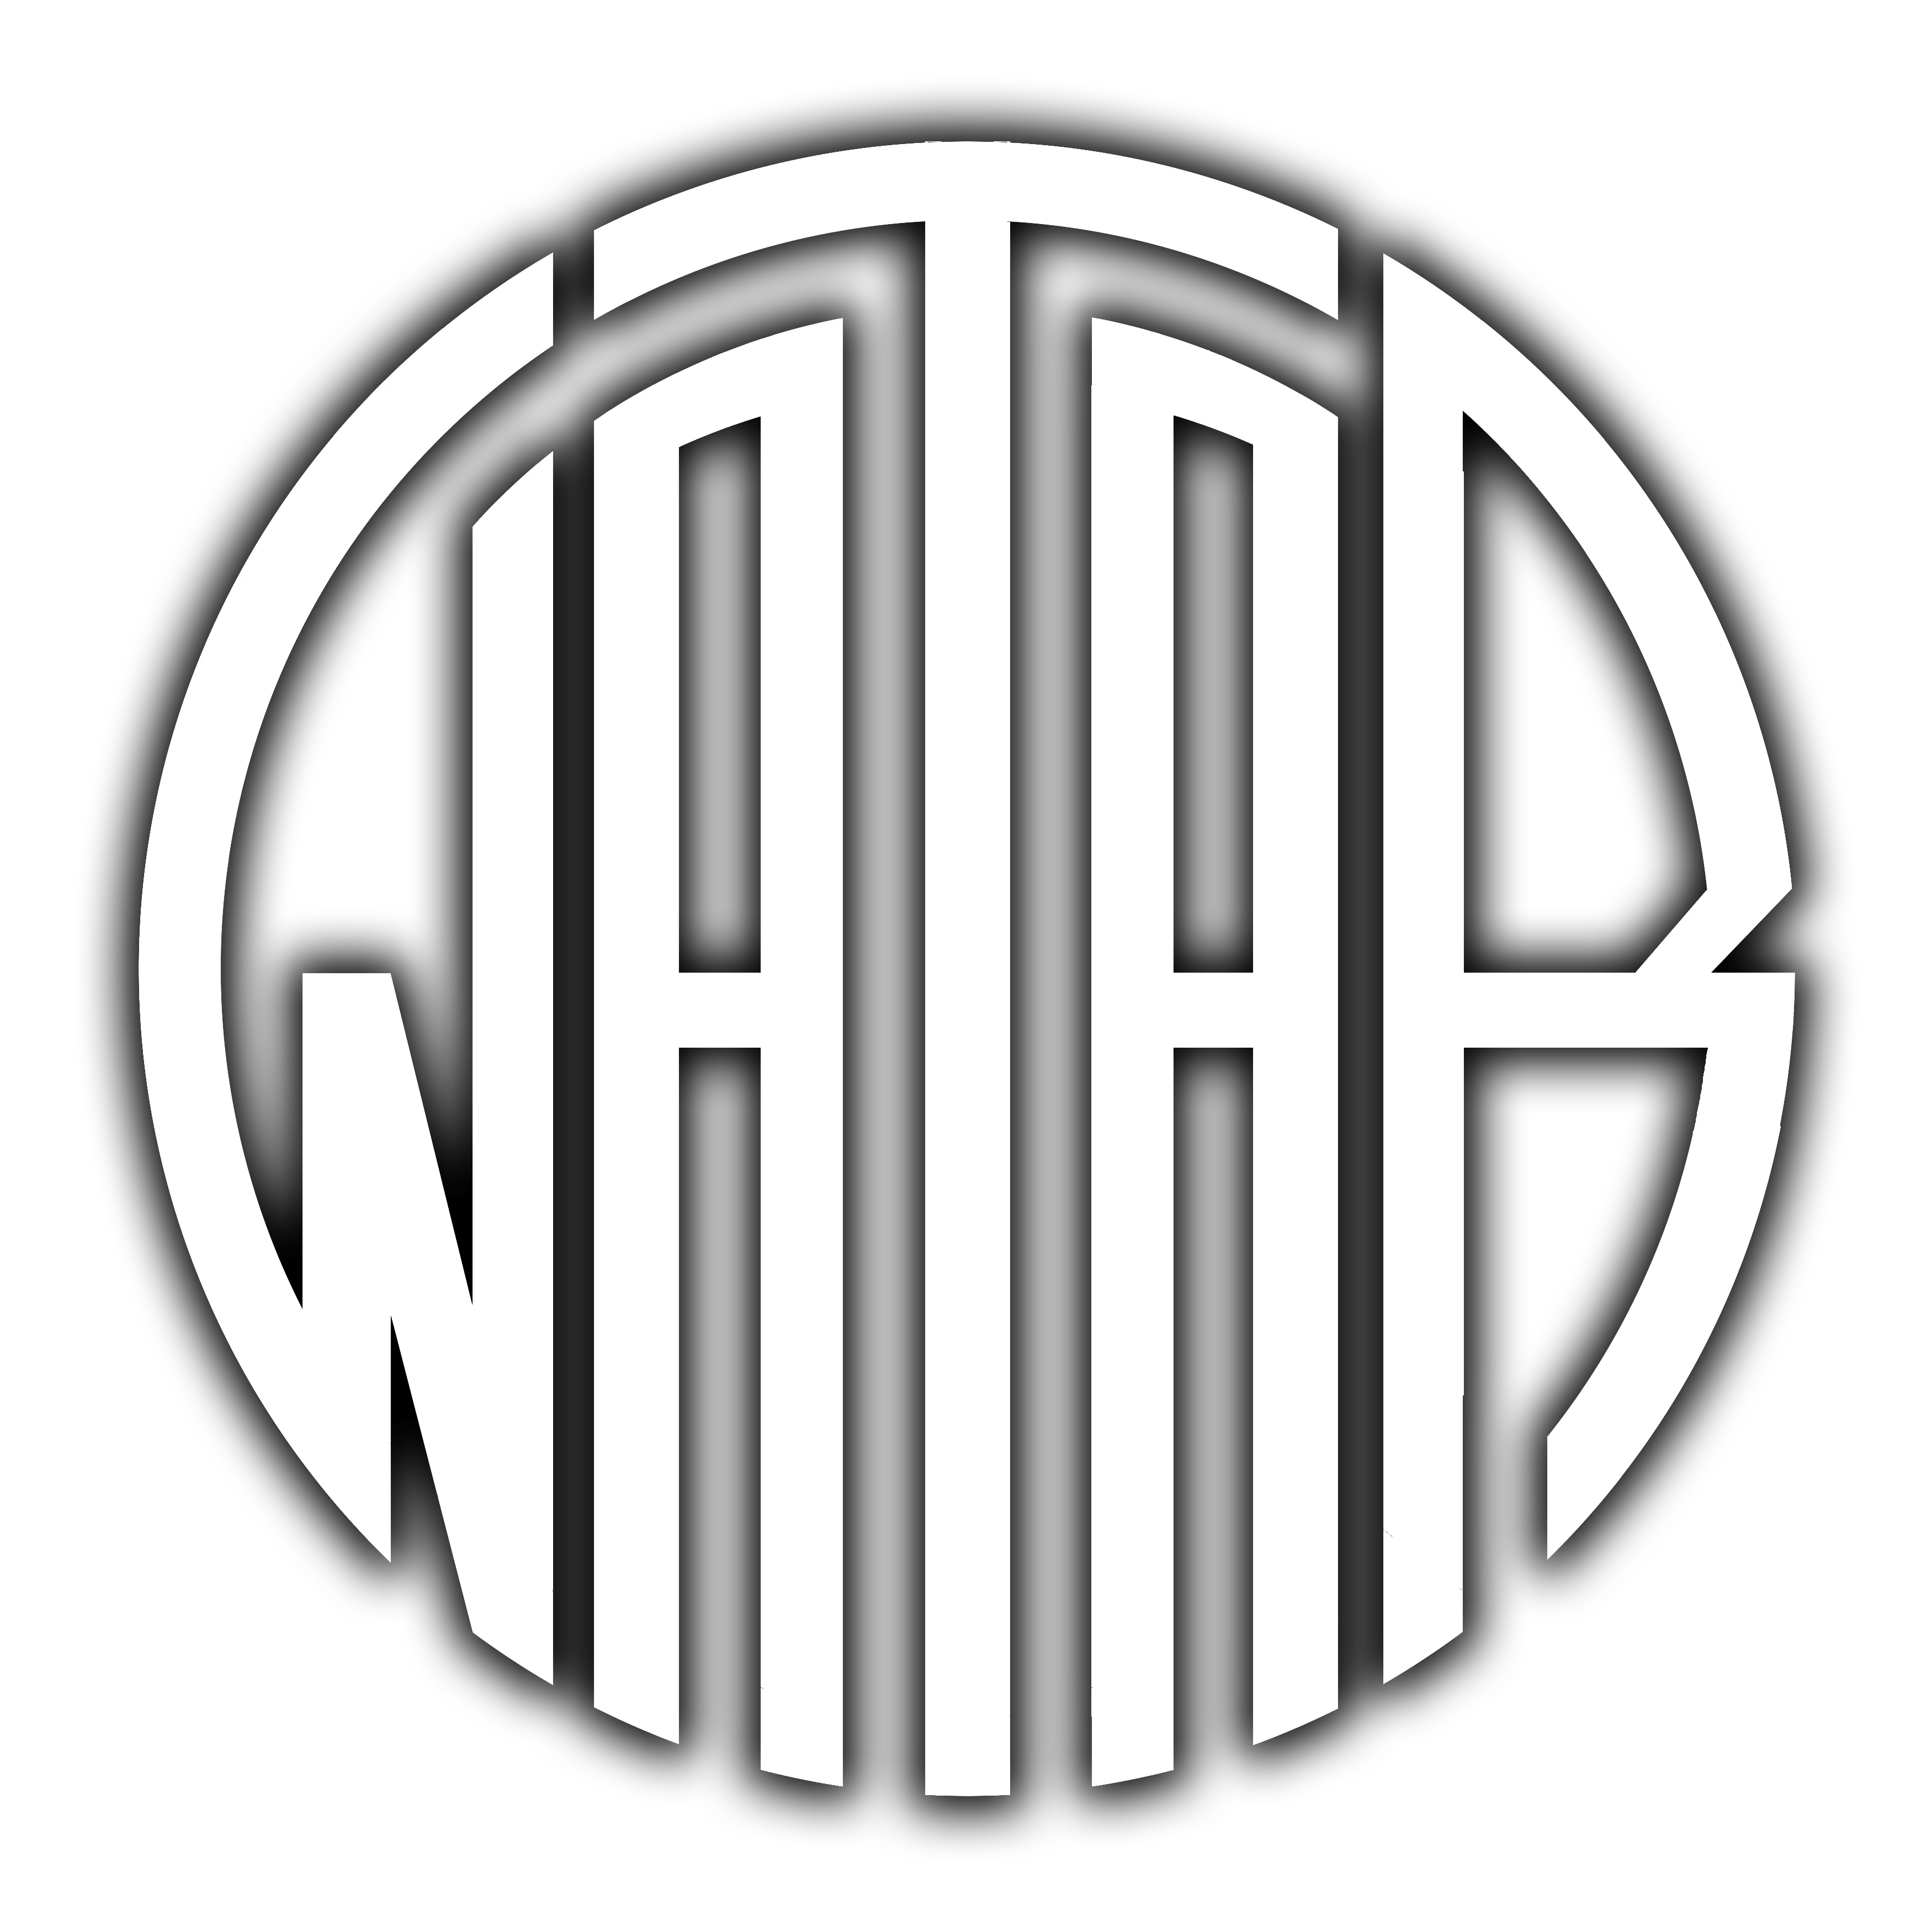 Bandlogo von Watar. "Watar" geschrieben in länglichen Buchstaben die einen Kreis ergeben und diesen ausfüllen.